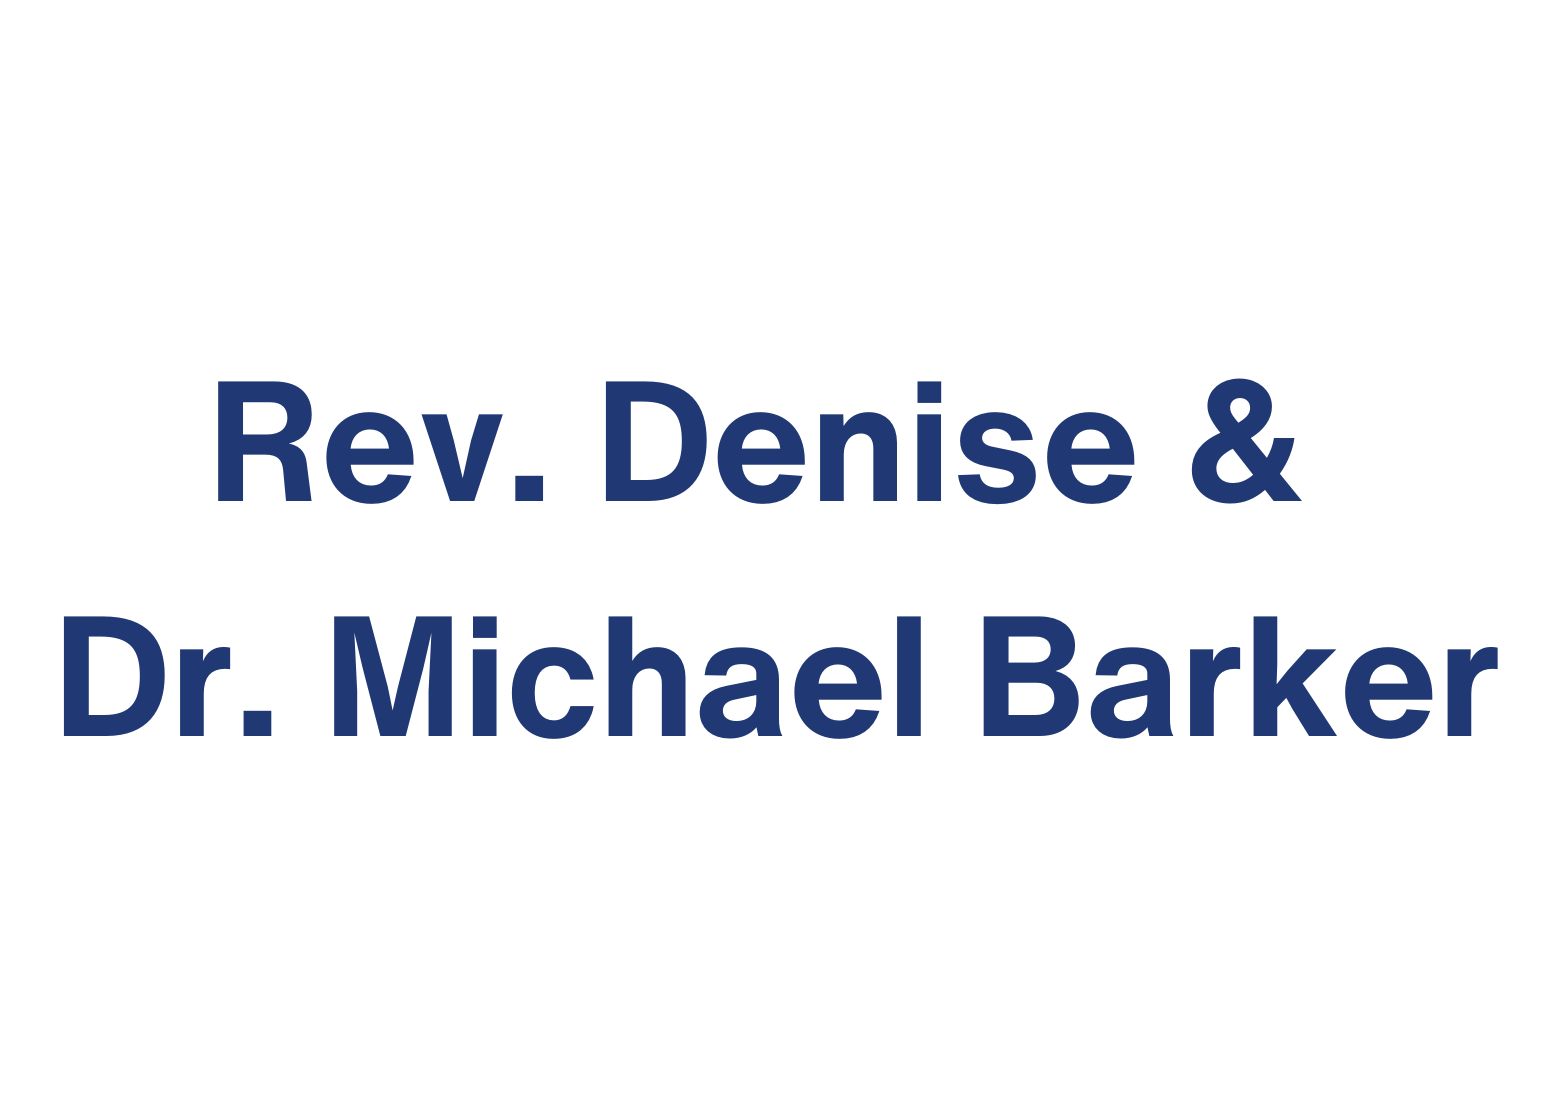 Rev. Denise & Dr. Michael Barker